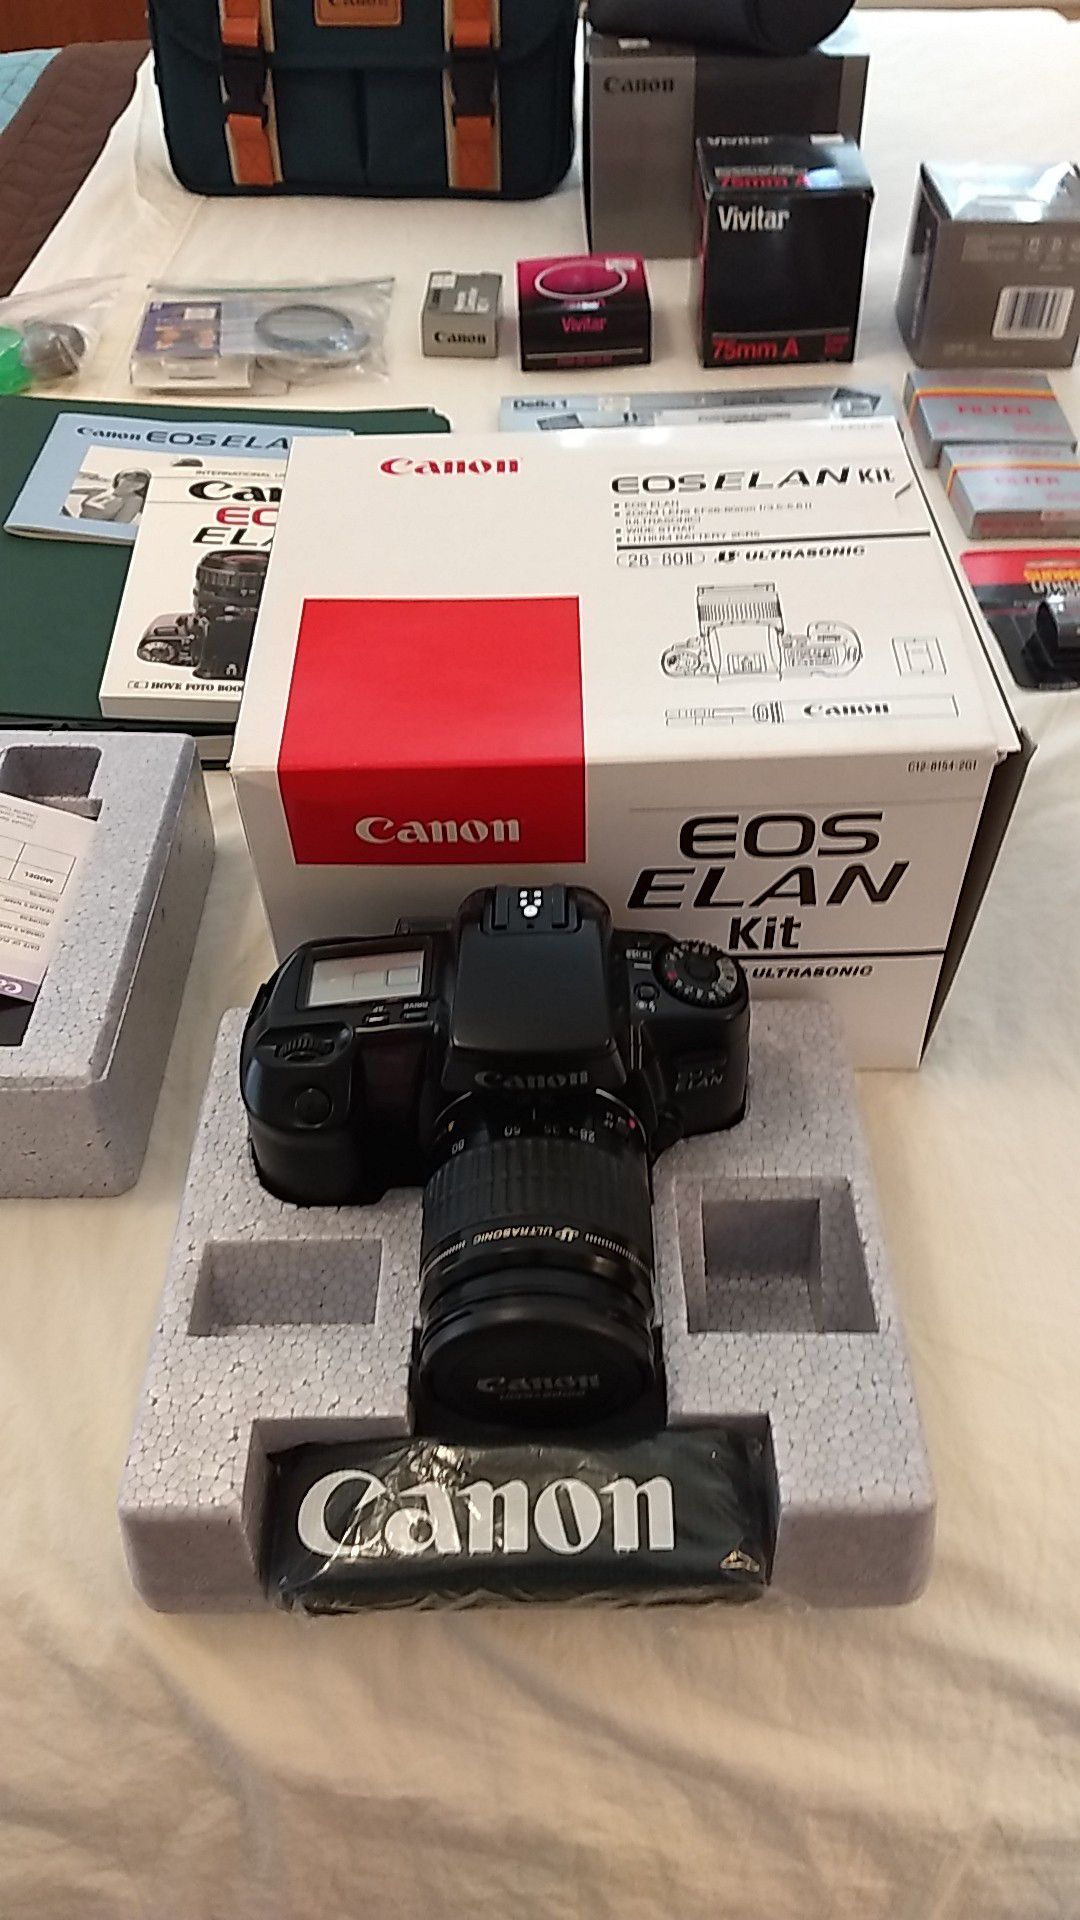 Canon EOS Elan Kit - 35mm film